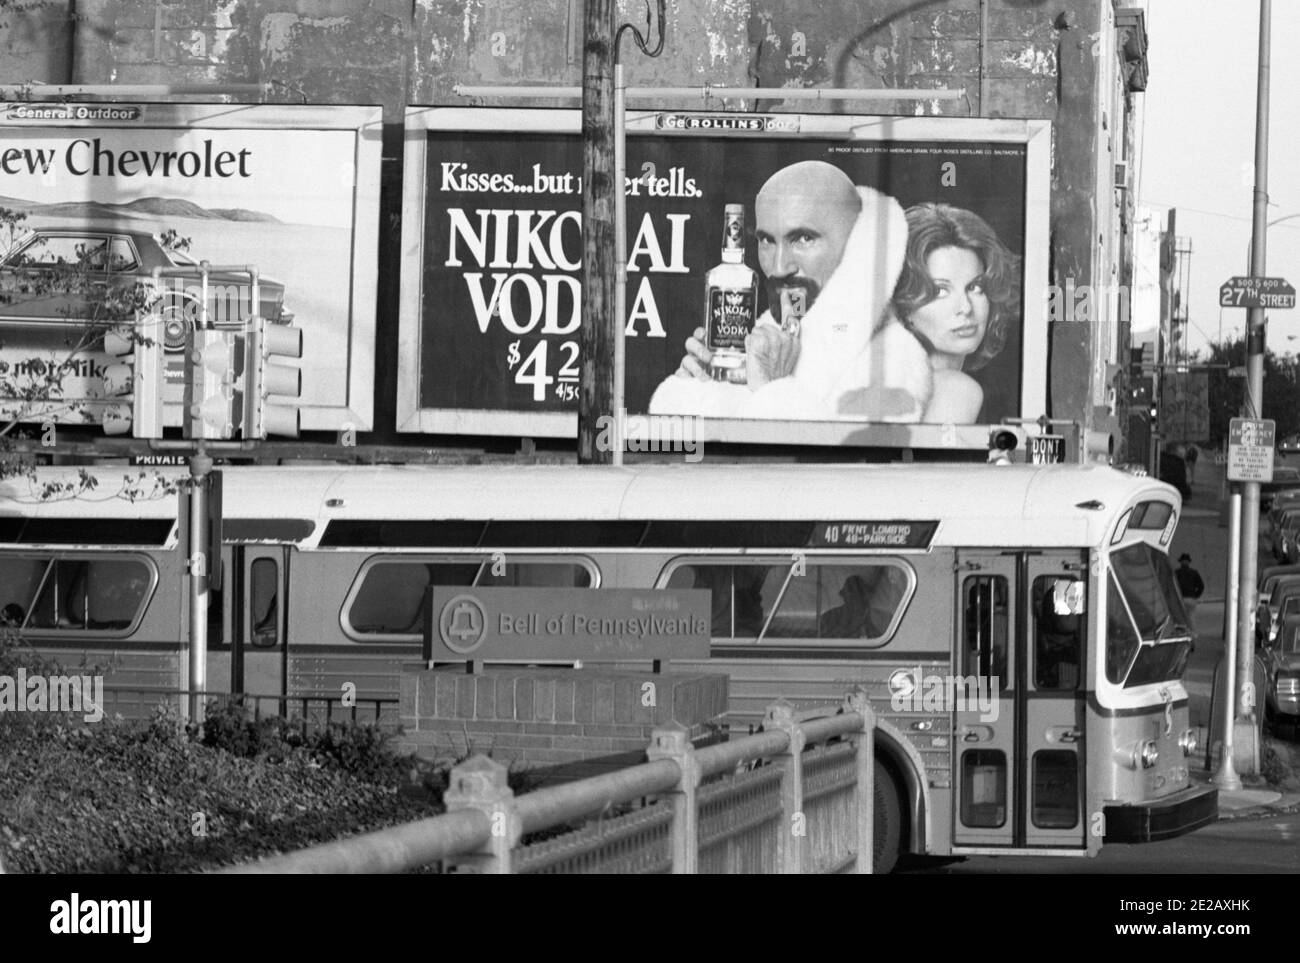 Nikolai Vodka, Philadelphia, USA, 1976 Stock Photo